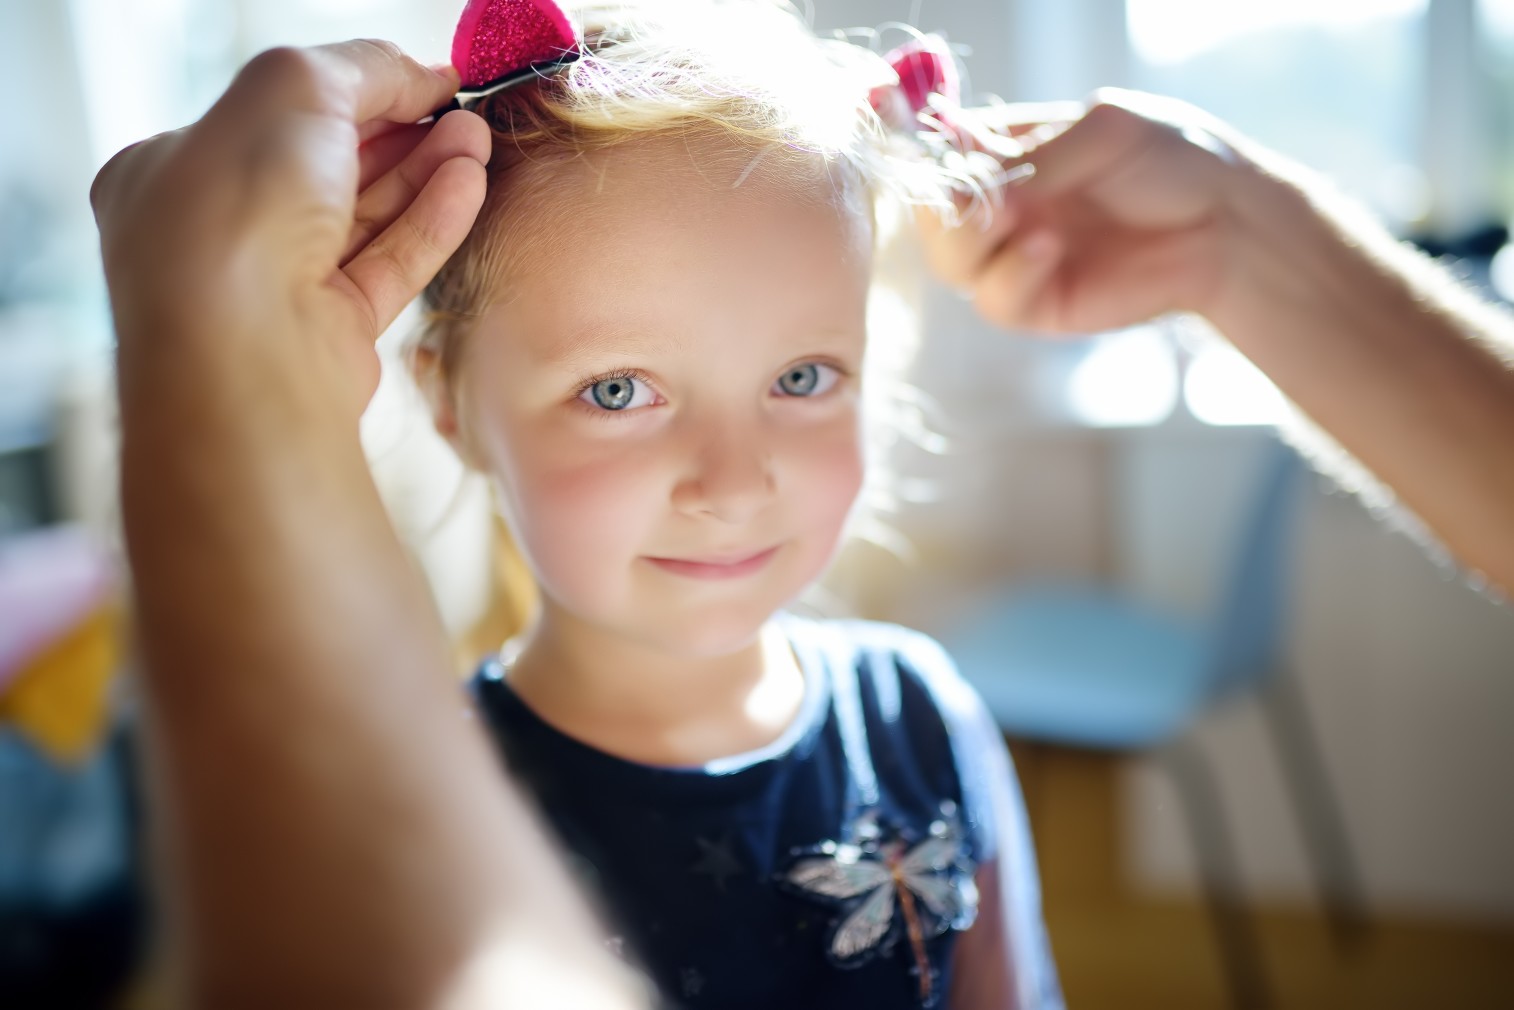 Tolle Frisuren für die Tochter - das kriegt auch jeder Vater mit etwas Übung hin! Bild: @Maria_Sbytova via Twenty20